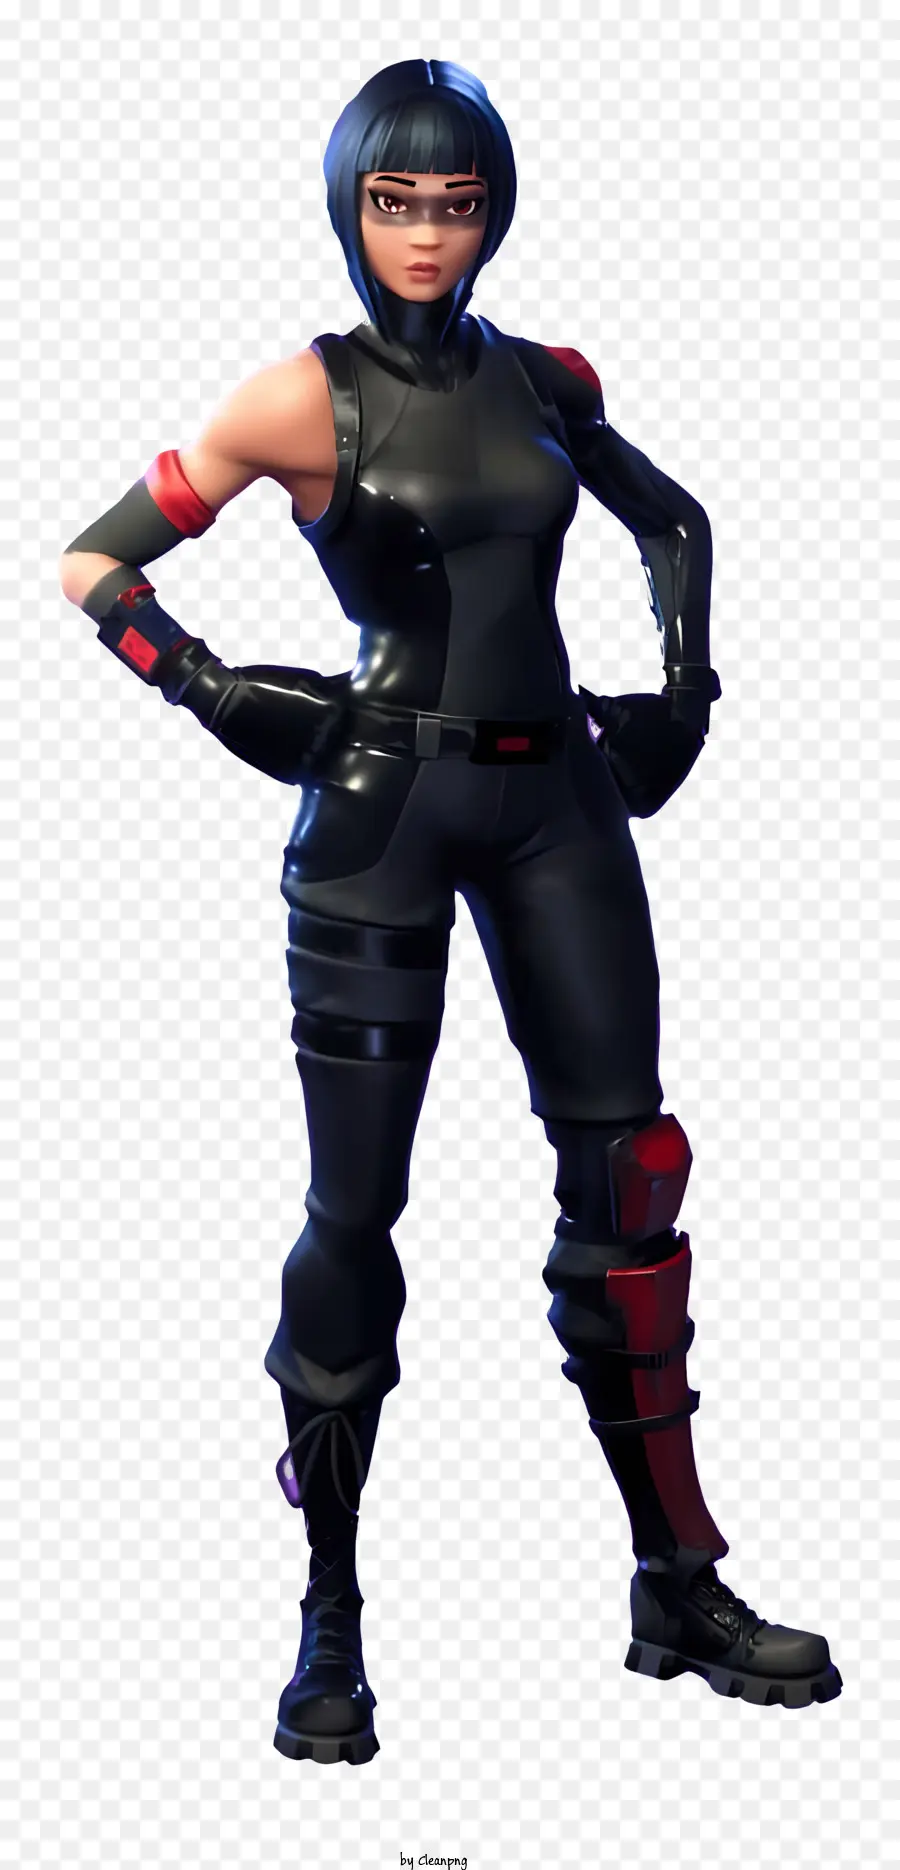 Fortnite - Người phụ nữ mặc áo đen, đeo kính râm trong trò chơi video